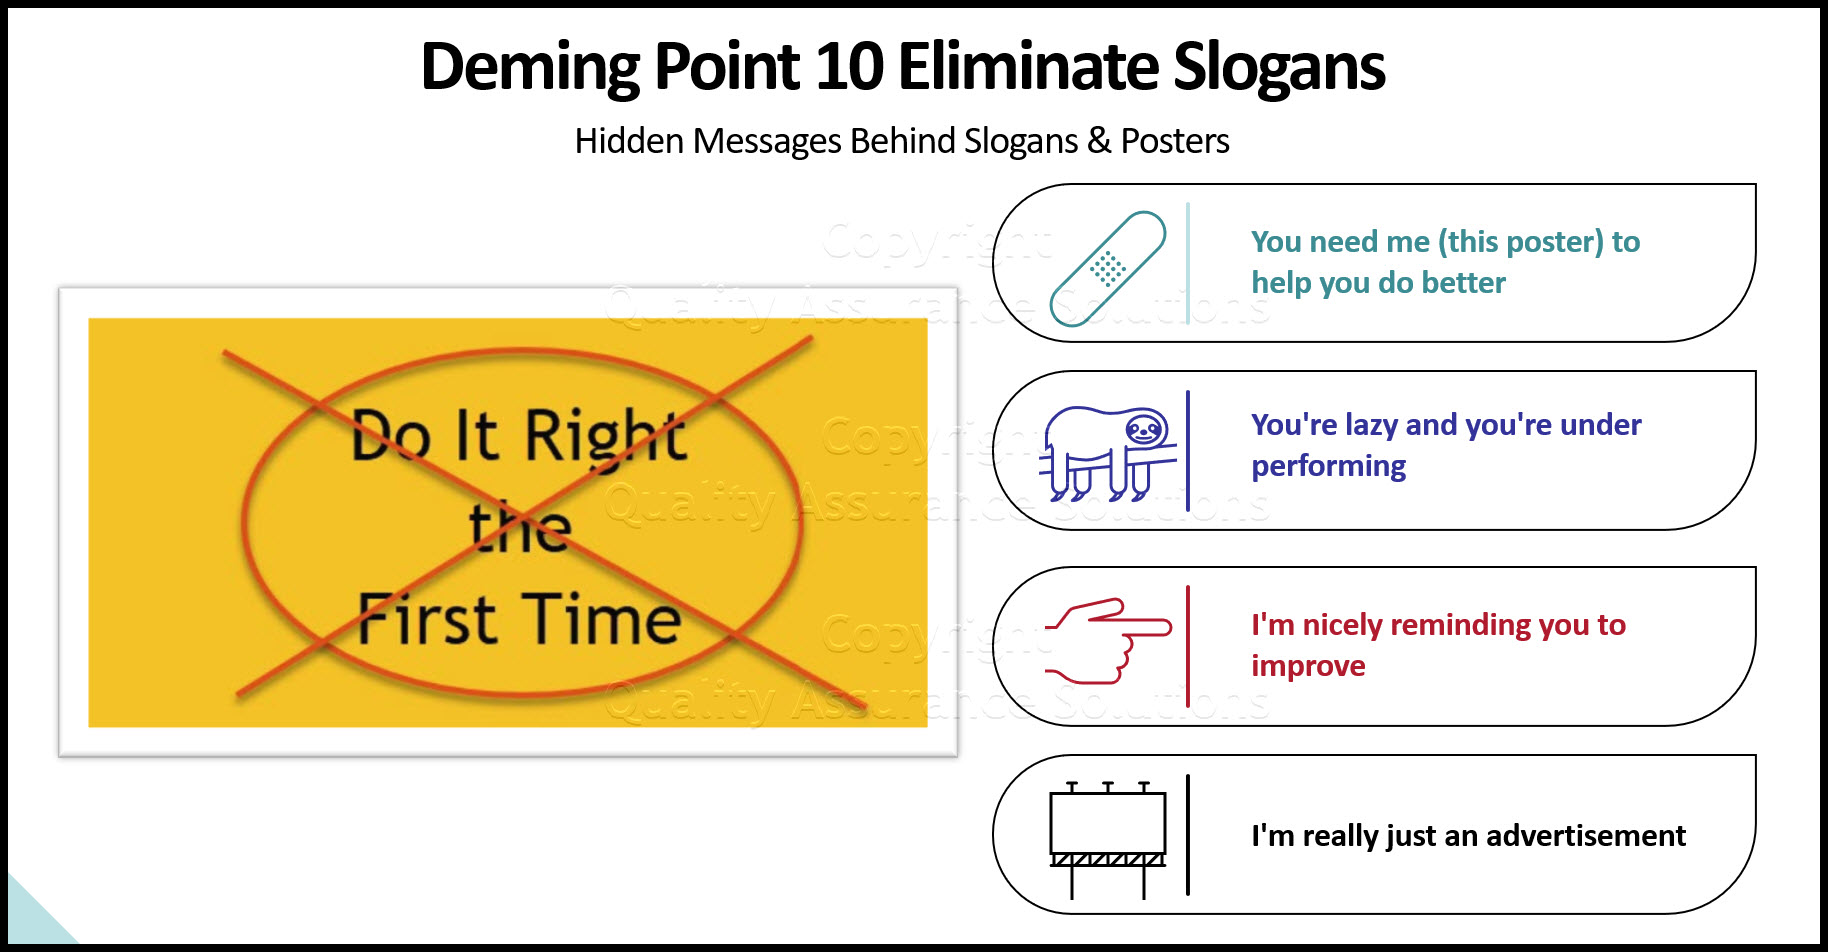 Deming Point 10 slide